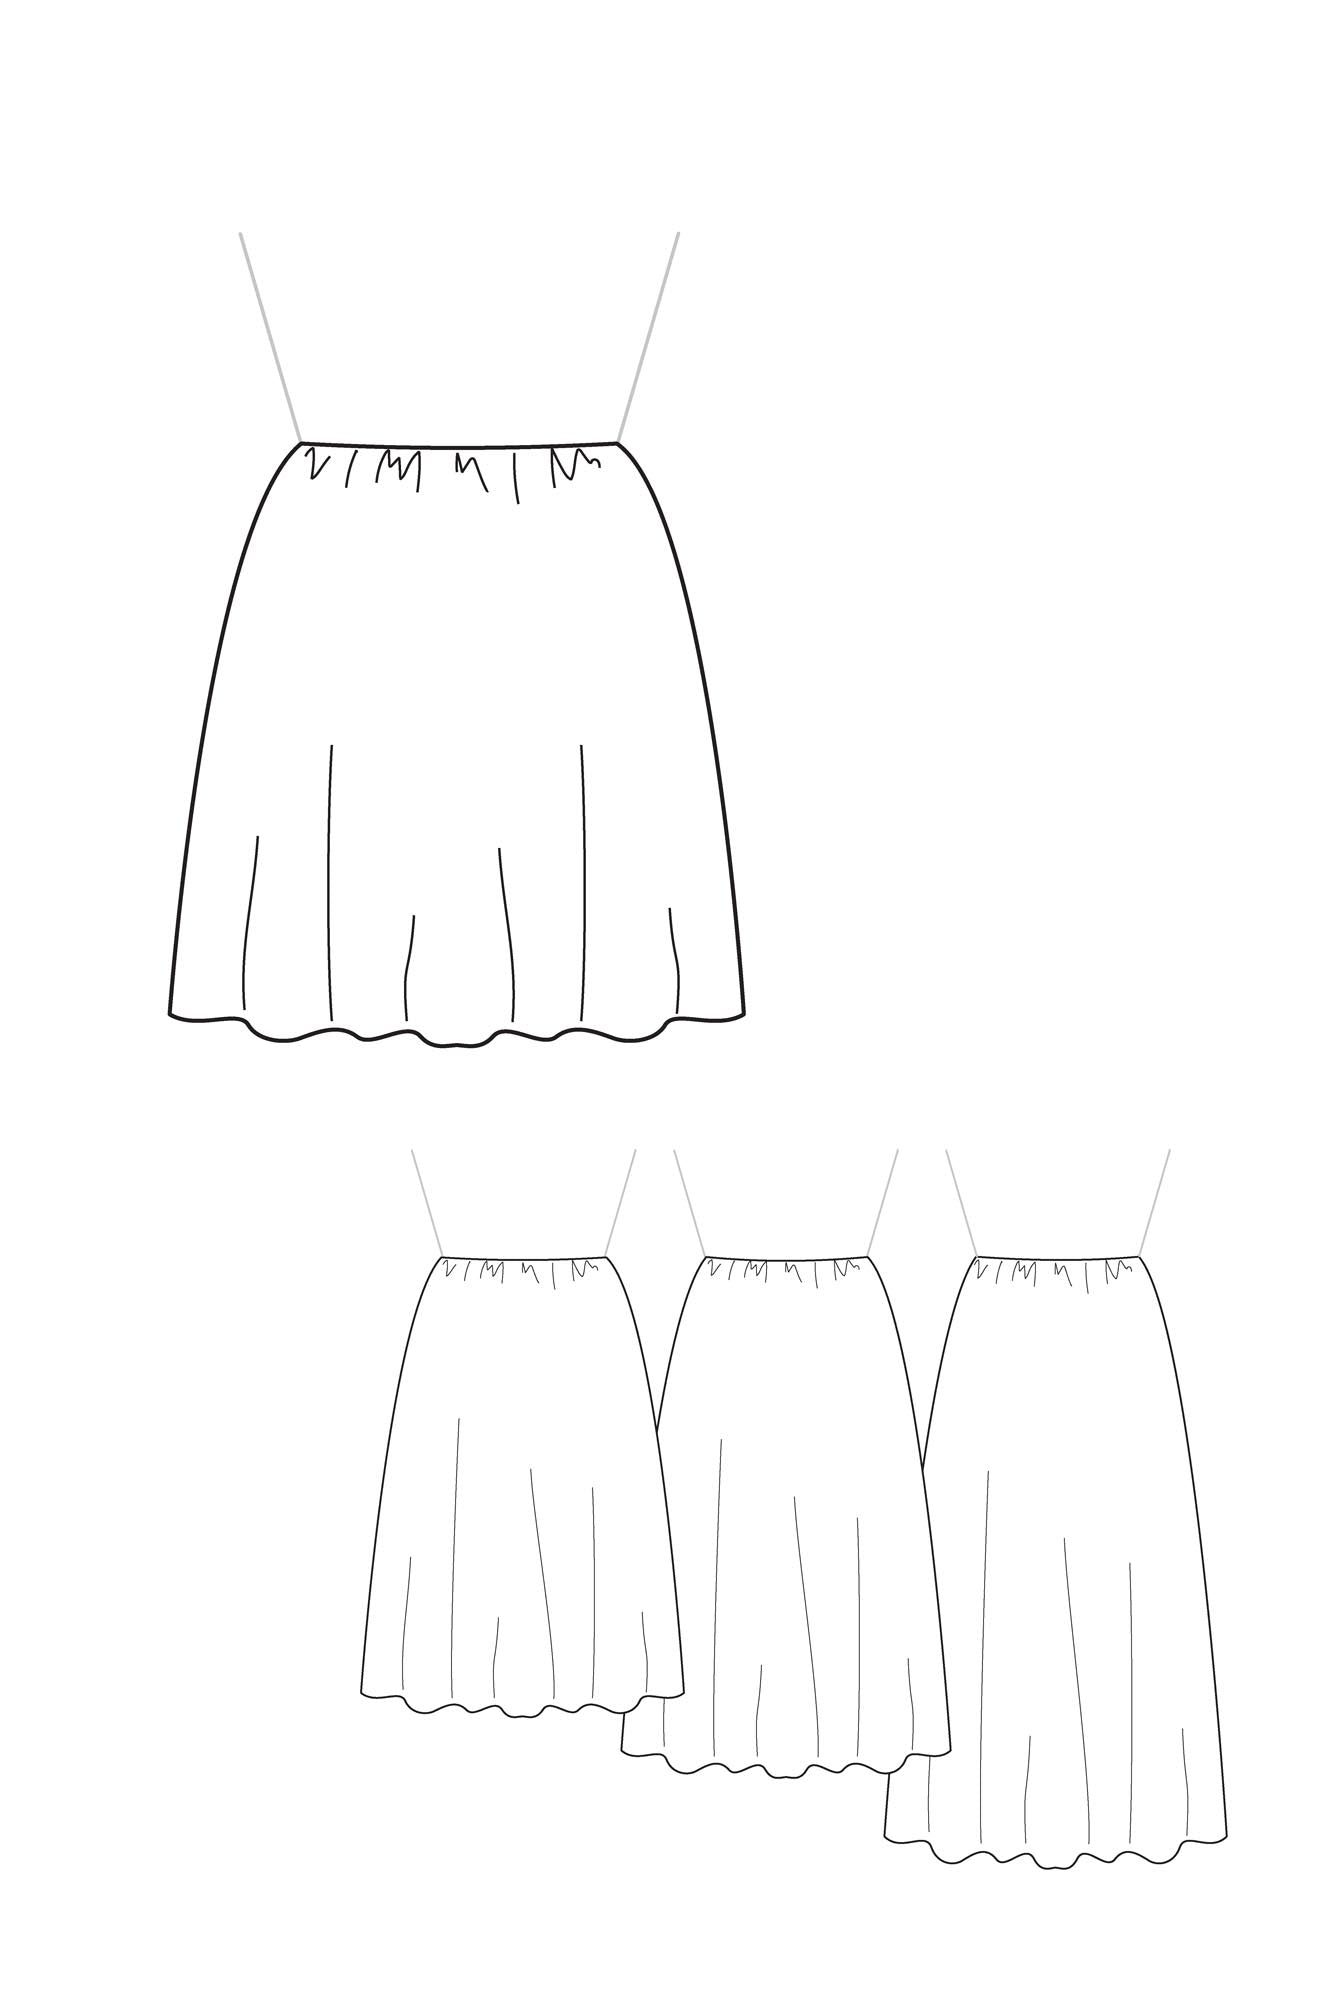 Patron de couture PDF pour femme, jupe ou robe froncée cintrée à la taille, à personnaliser avec le concept couture Atelier Charlotte Auzou, disponible en 4 longueurs et 3 statures pour une création sur-mesure